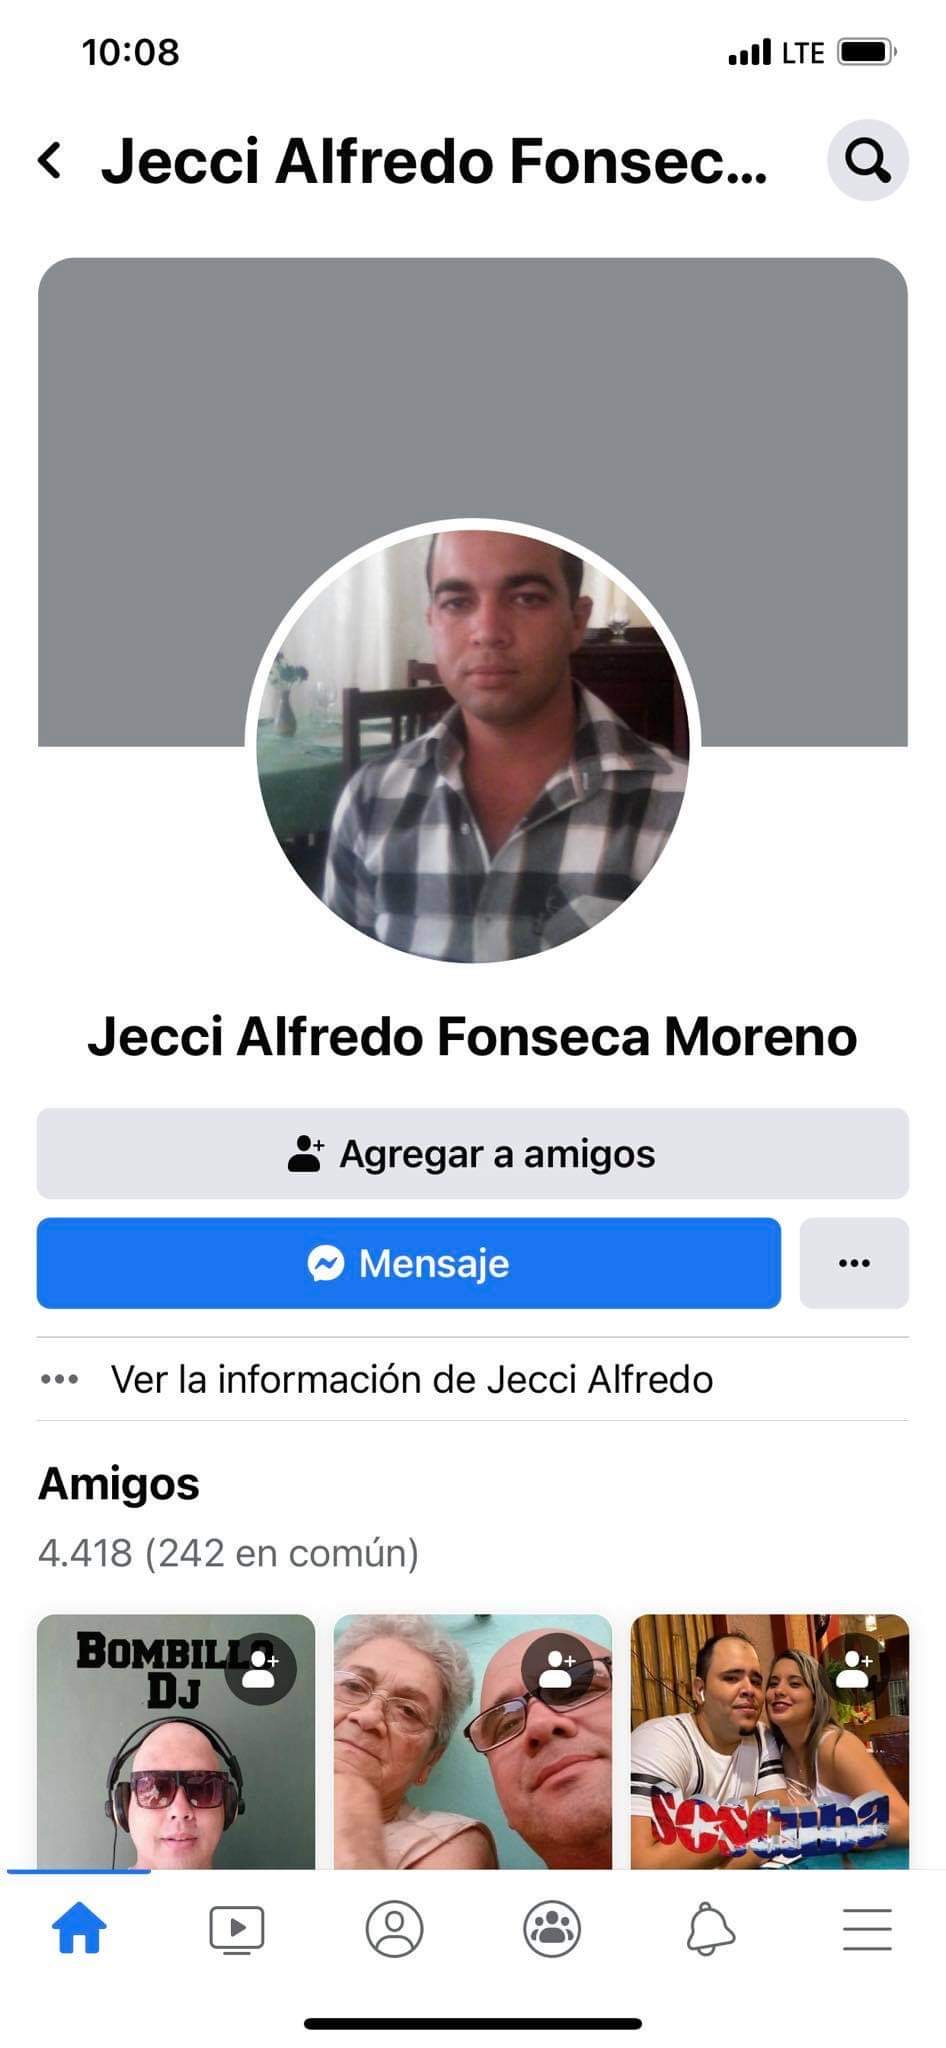 Jecci Alfredo Fonseca Moreno